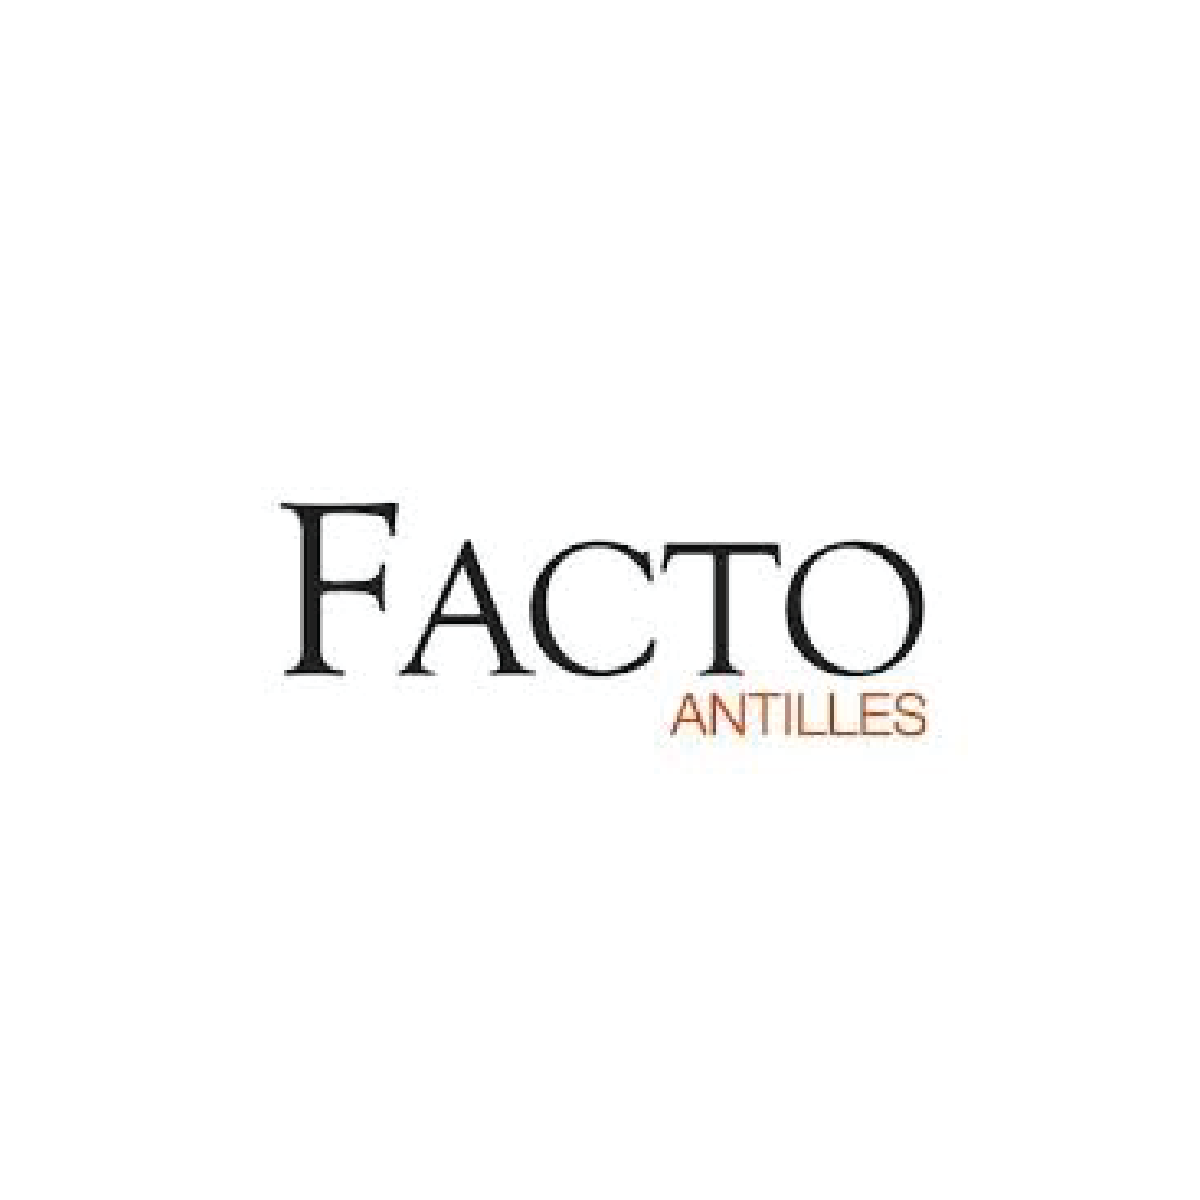 logo_facto_antilles_martinique_guadeloupe_regidom_clients_communication.png@4x